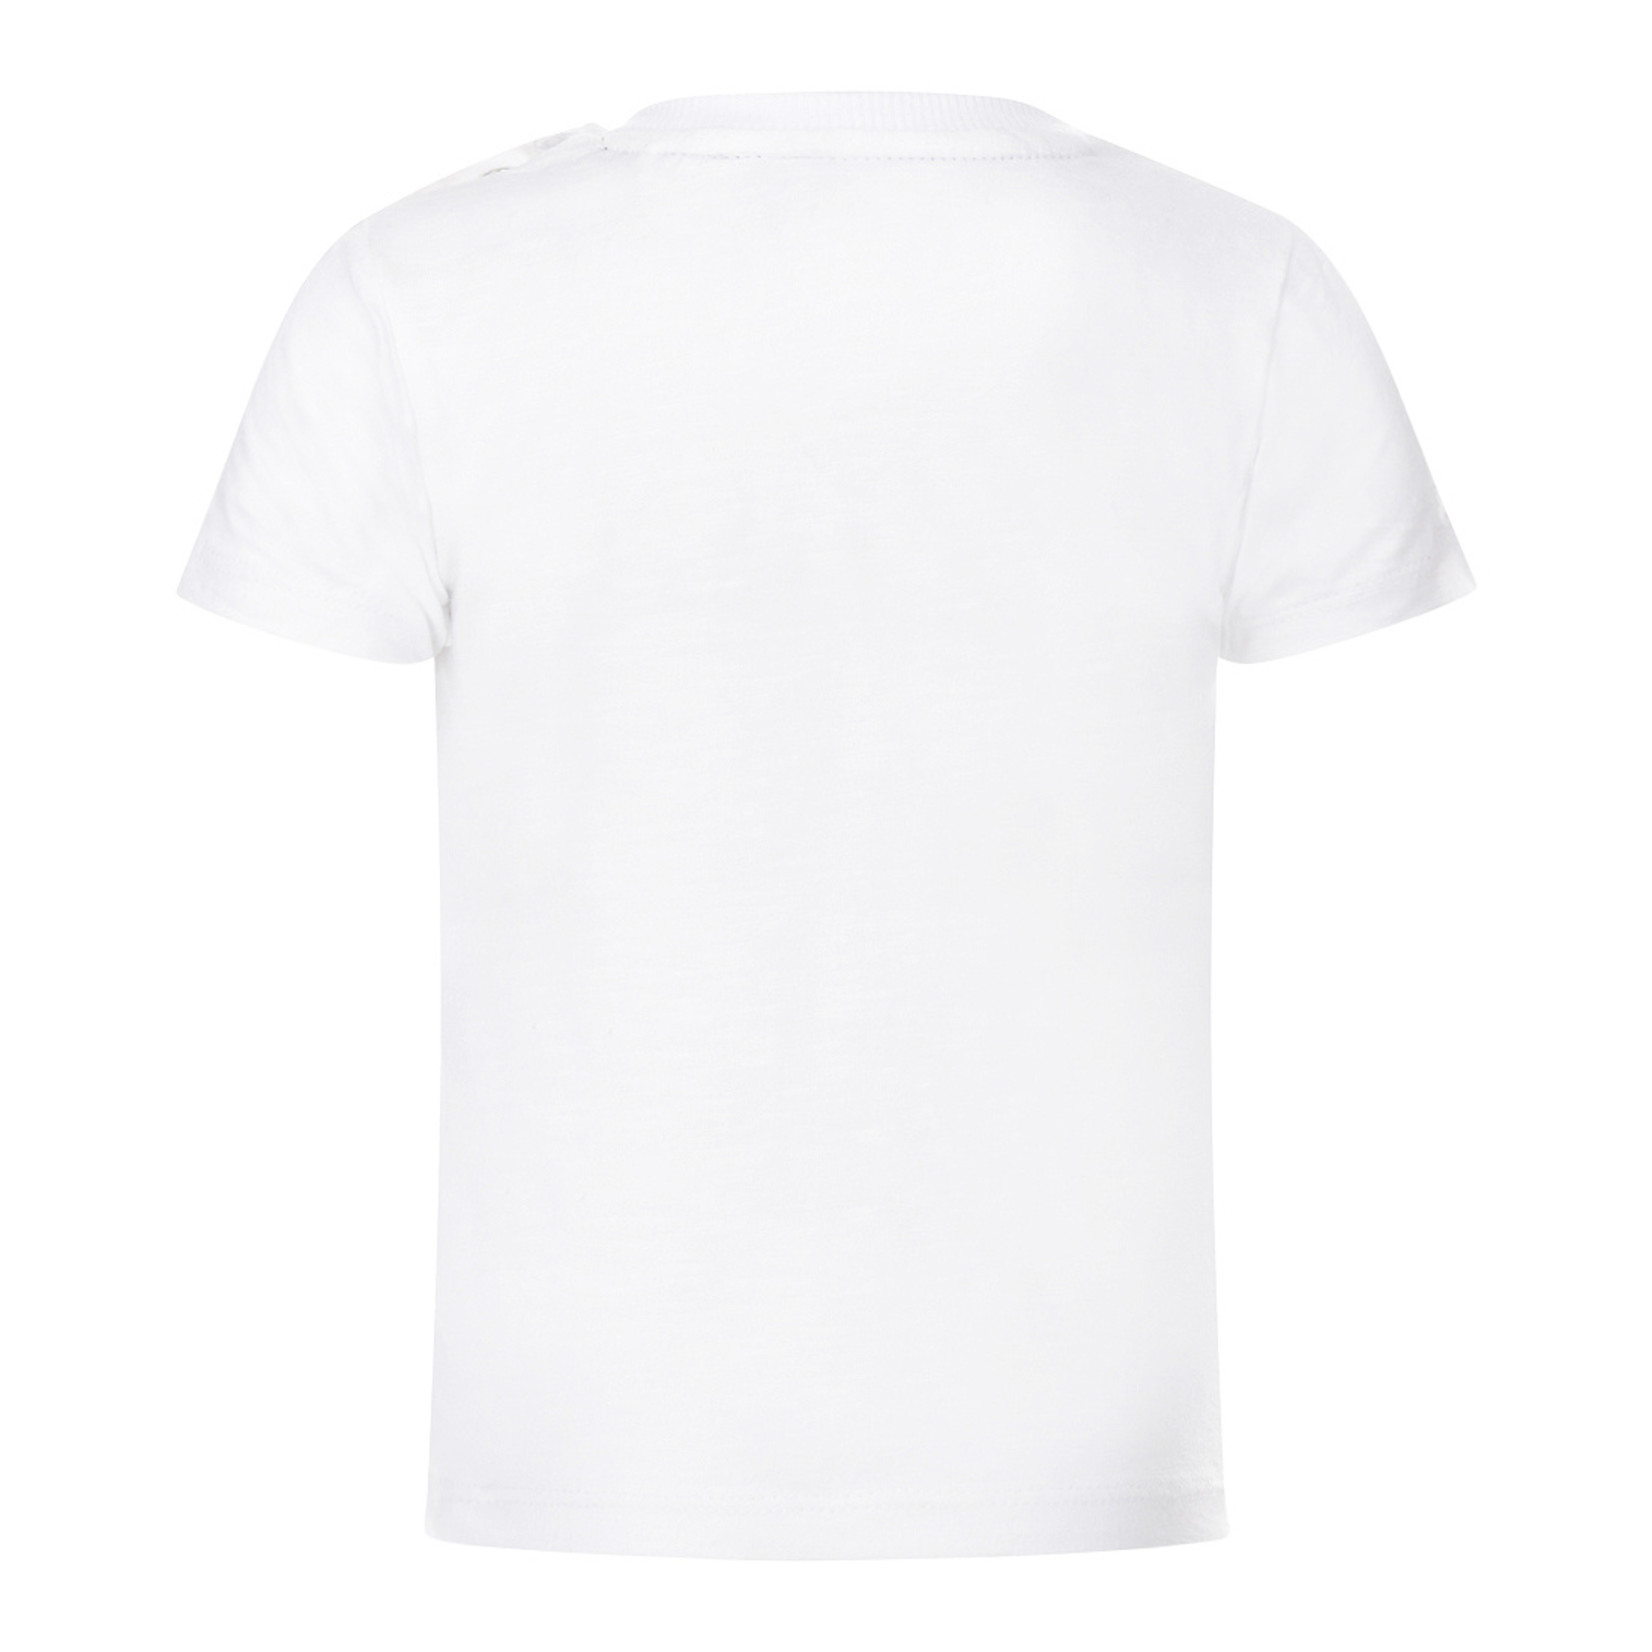 Koko Noko T-shirt ss White 2023